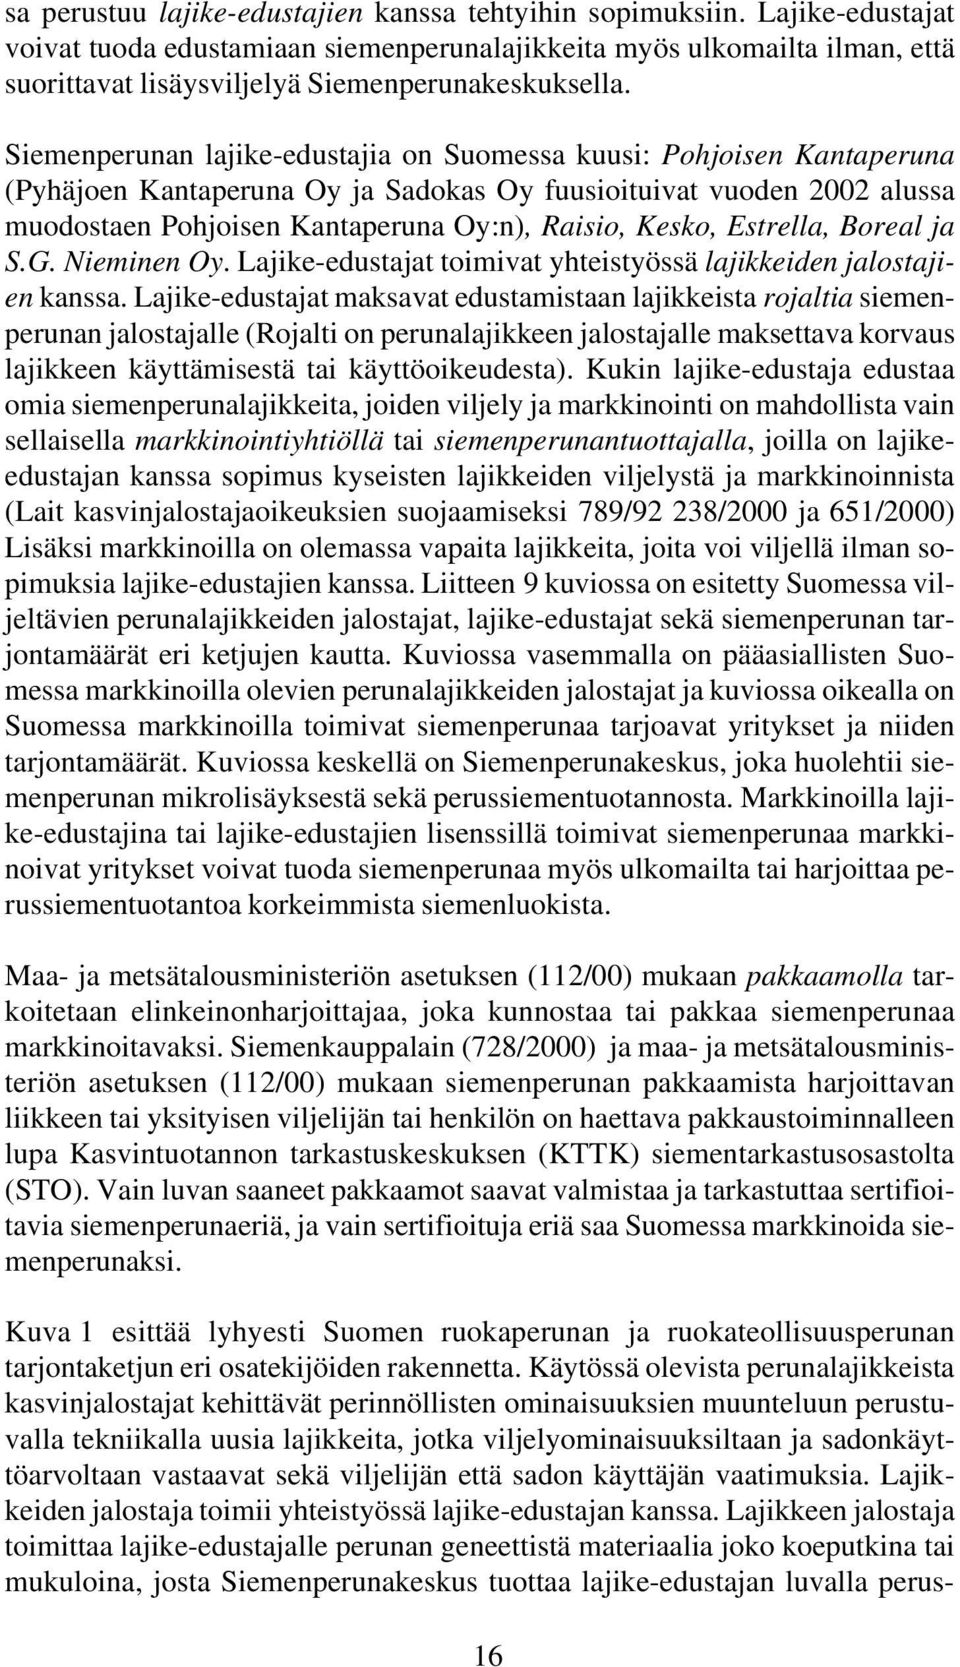 Siemenperunan lajike-edustajia on Suomessa kuusi: Pohjoisen Kantaperuna (Pyhäjoen Kantaperuna Oy ja Sadokas Oy fuusioituivat vuoden 2002 alussa muodostaen Pohjoisen Kantaperuna Oy:n), Raisio, Kesko,